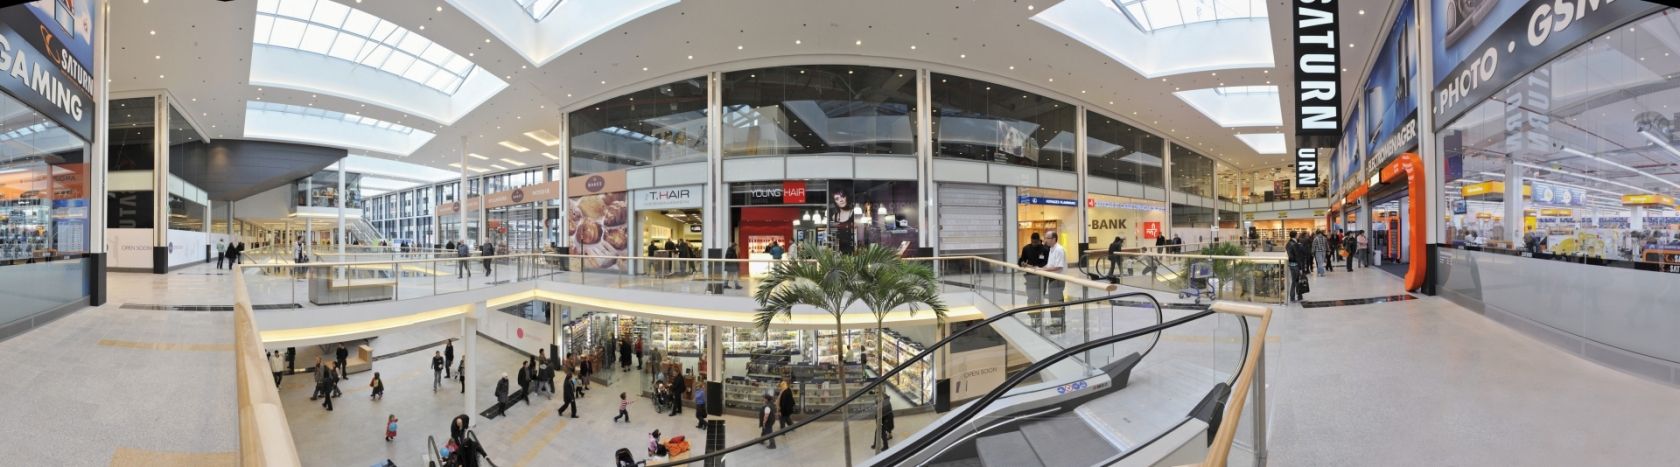 BELVAL PLAZA Shopping Center Esch Belval